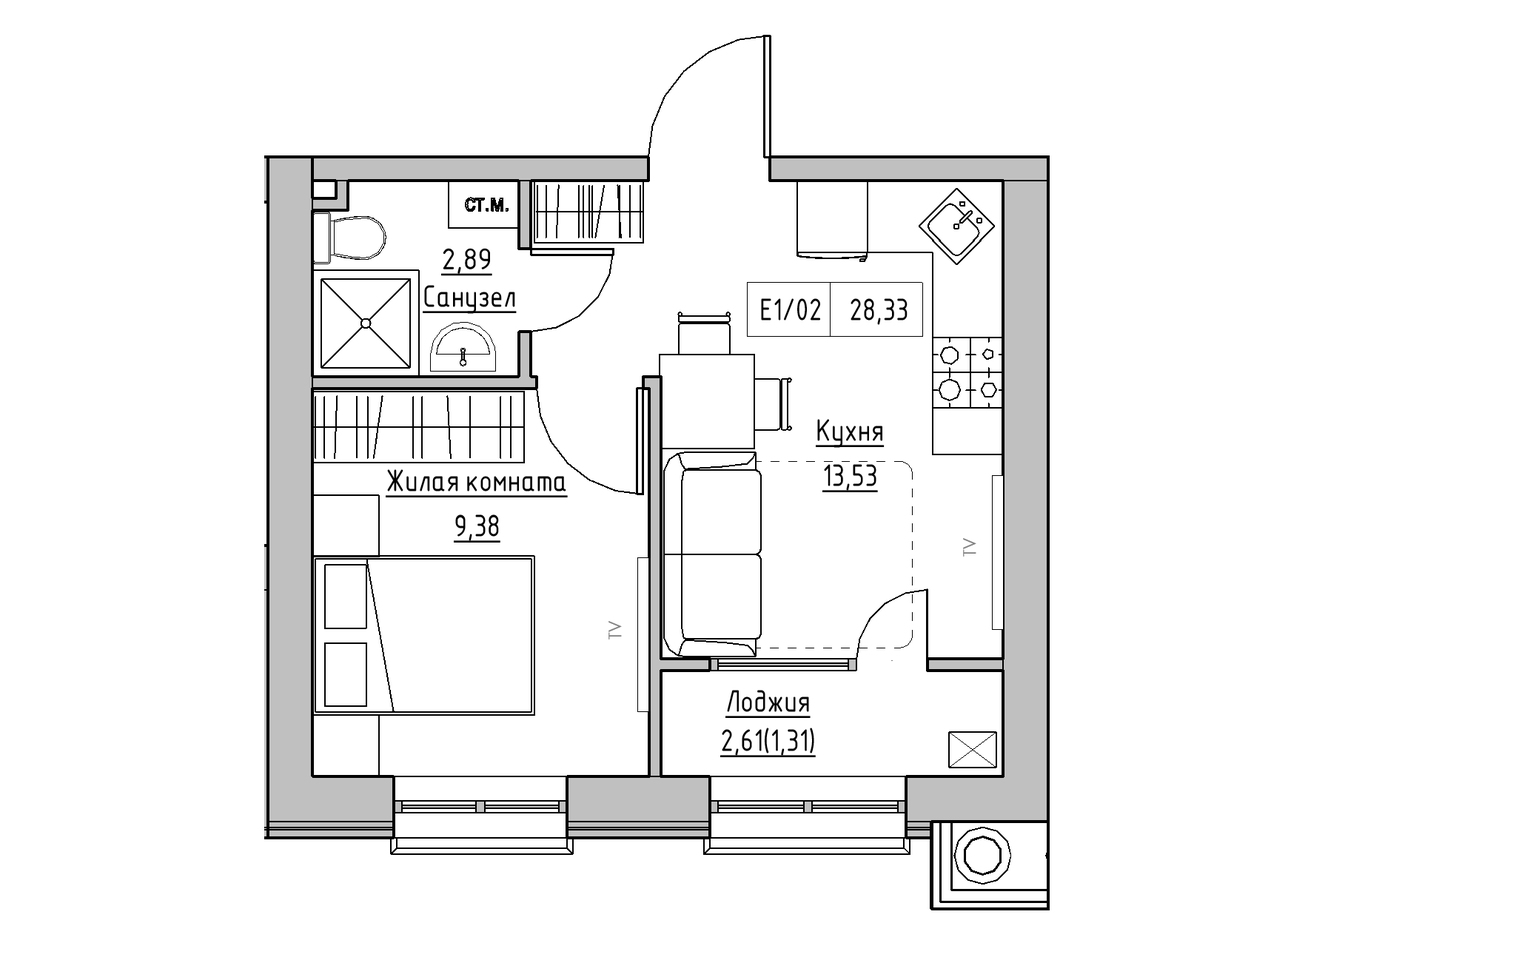 Планування 1-к квартира площею 28.33м2, KS-009-04/0013.